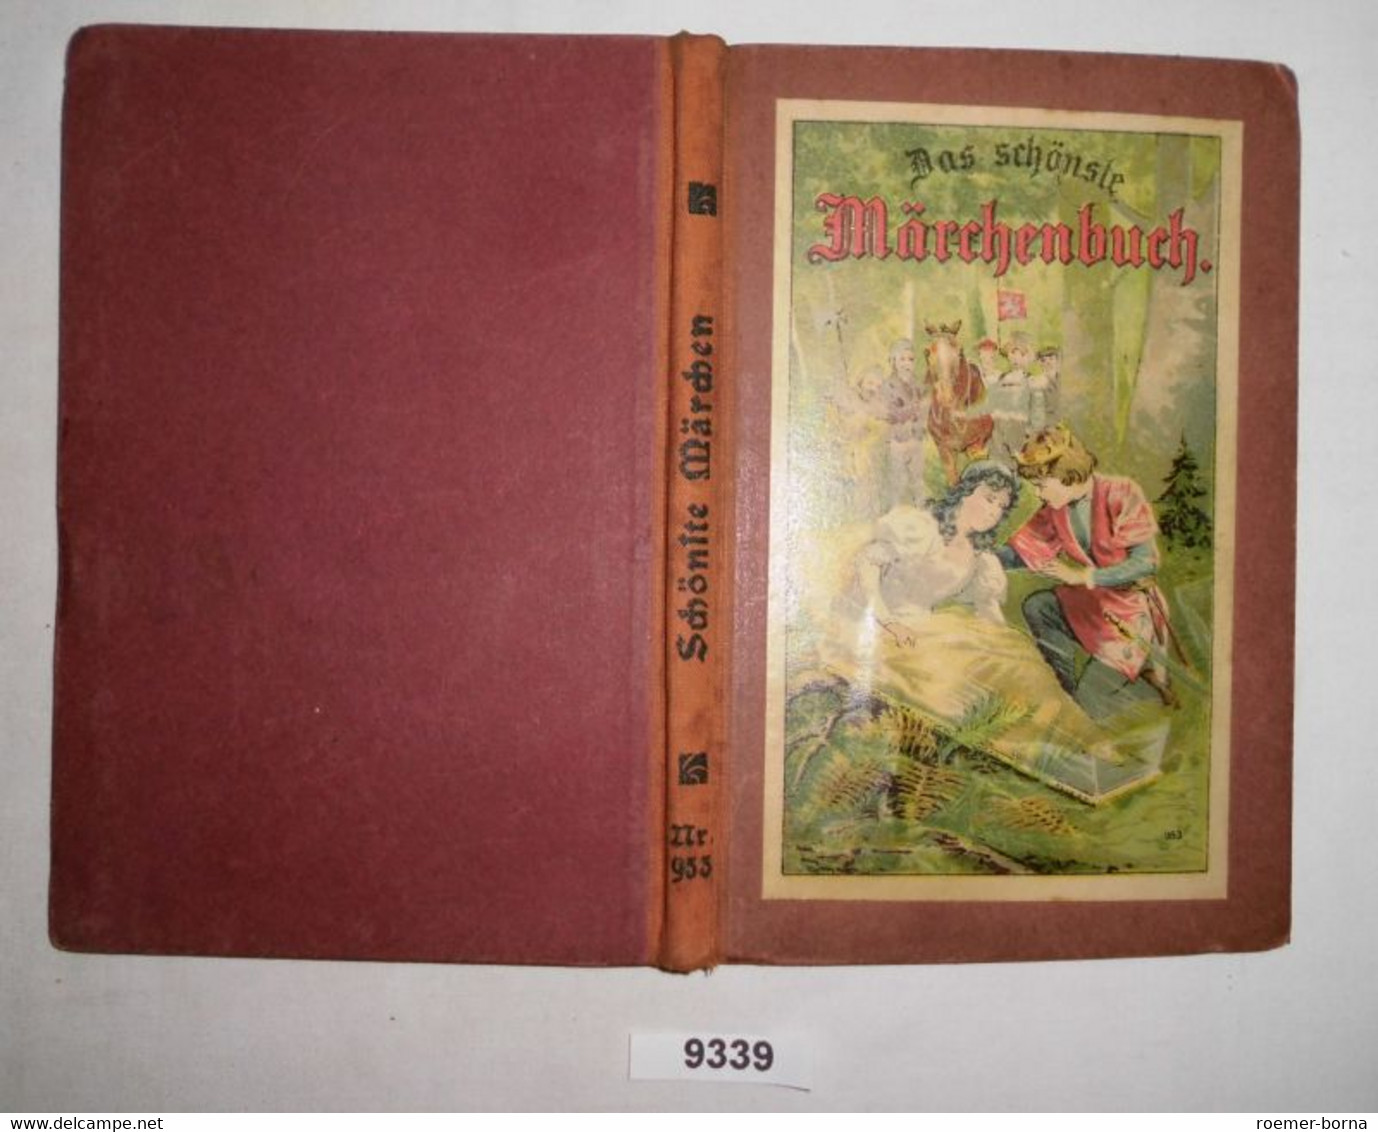 Das Schönste Märchenbuch Für Kinder - Sprookjes